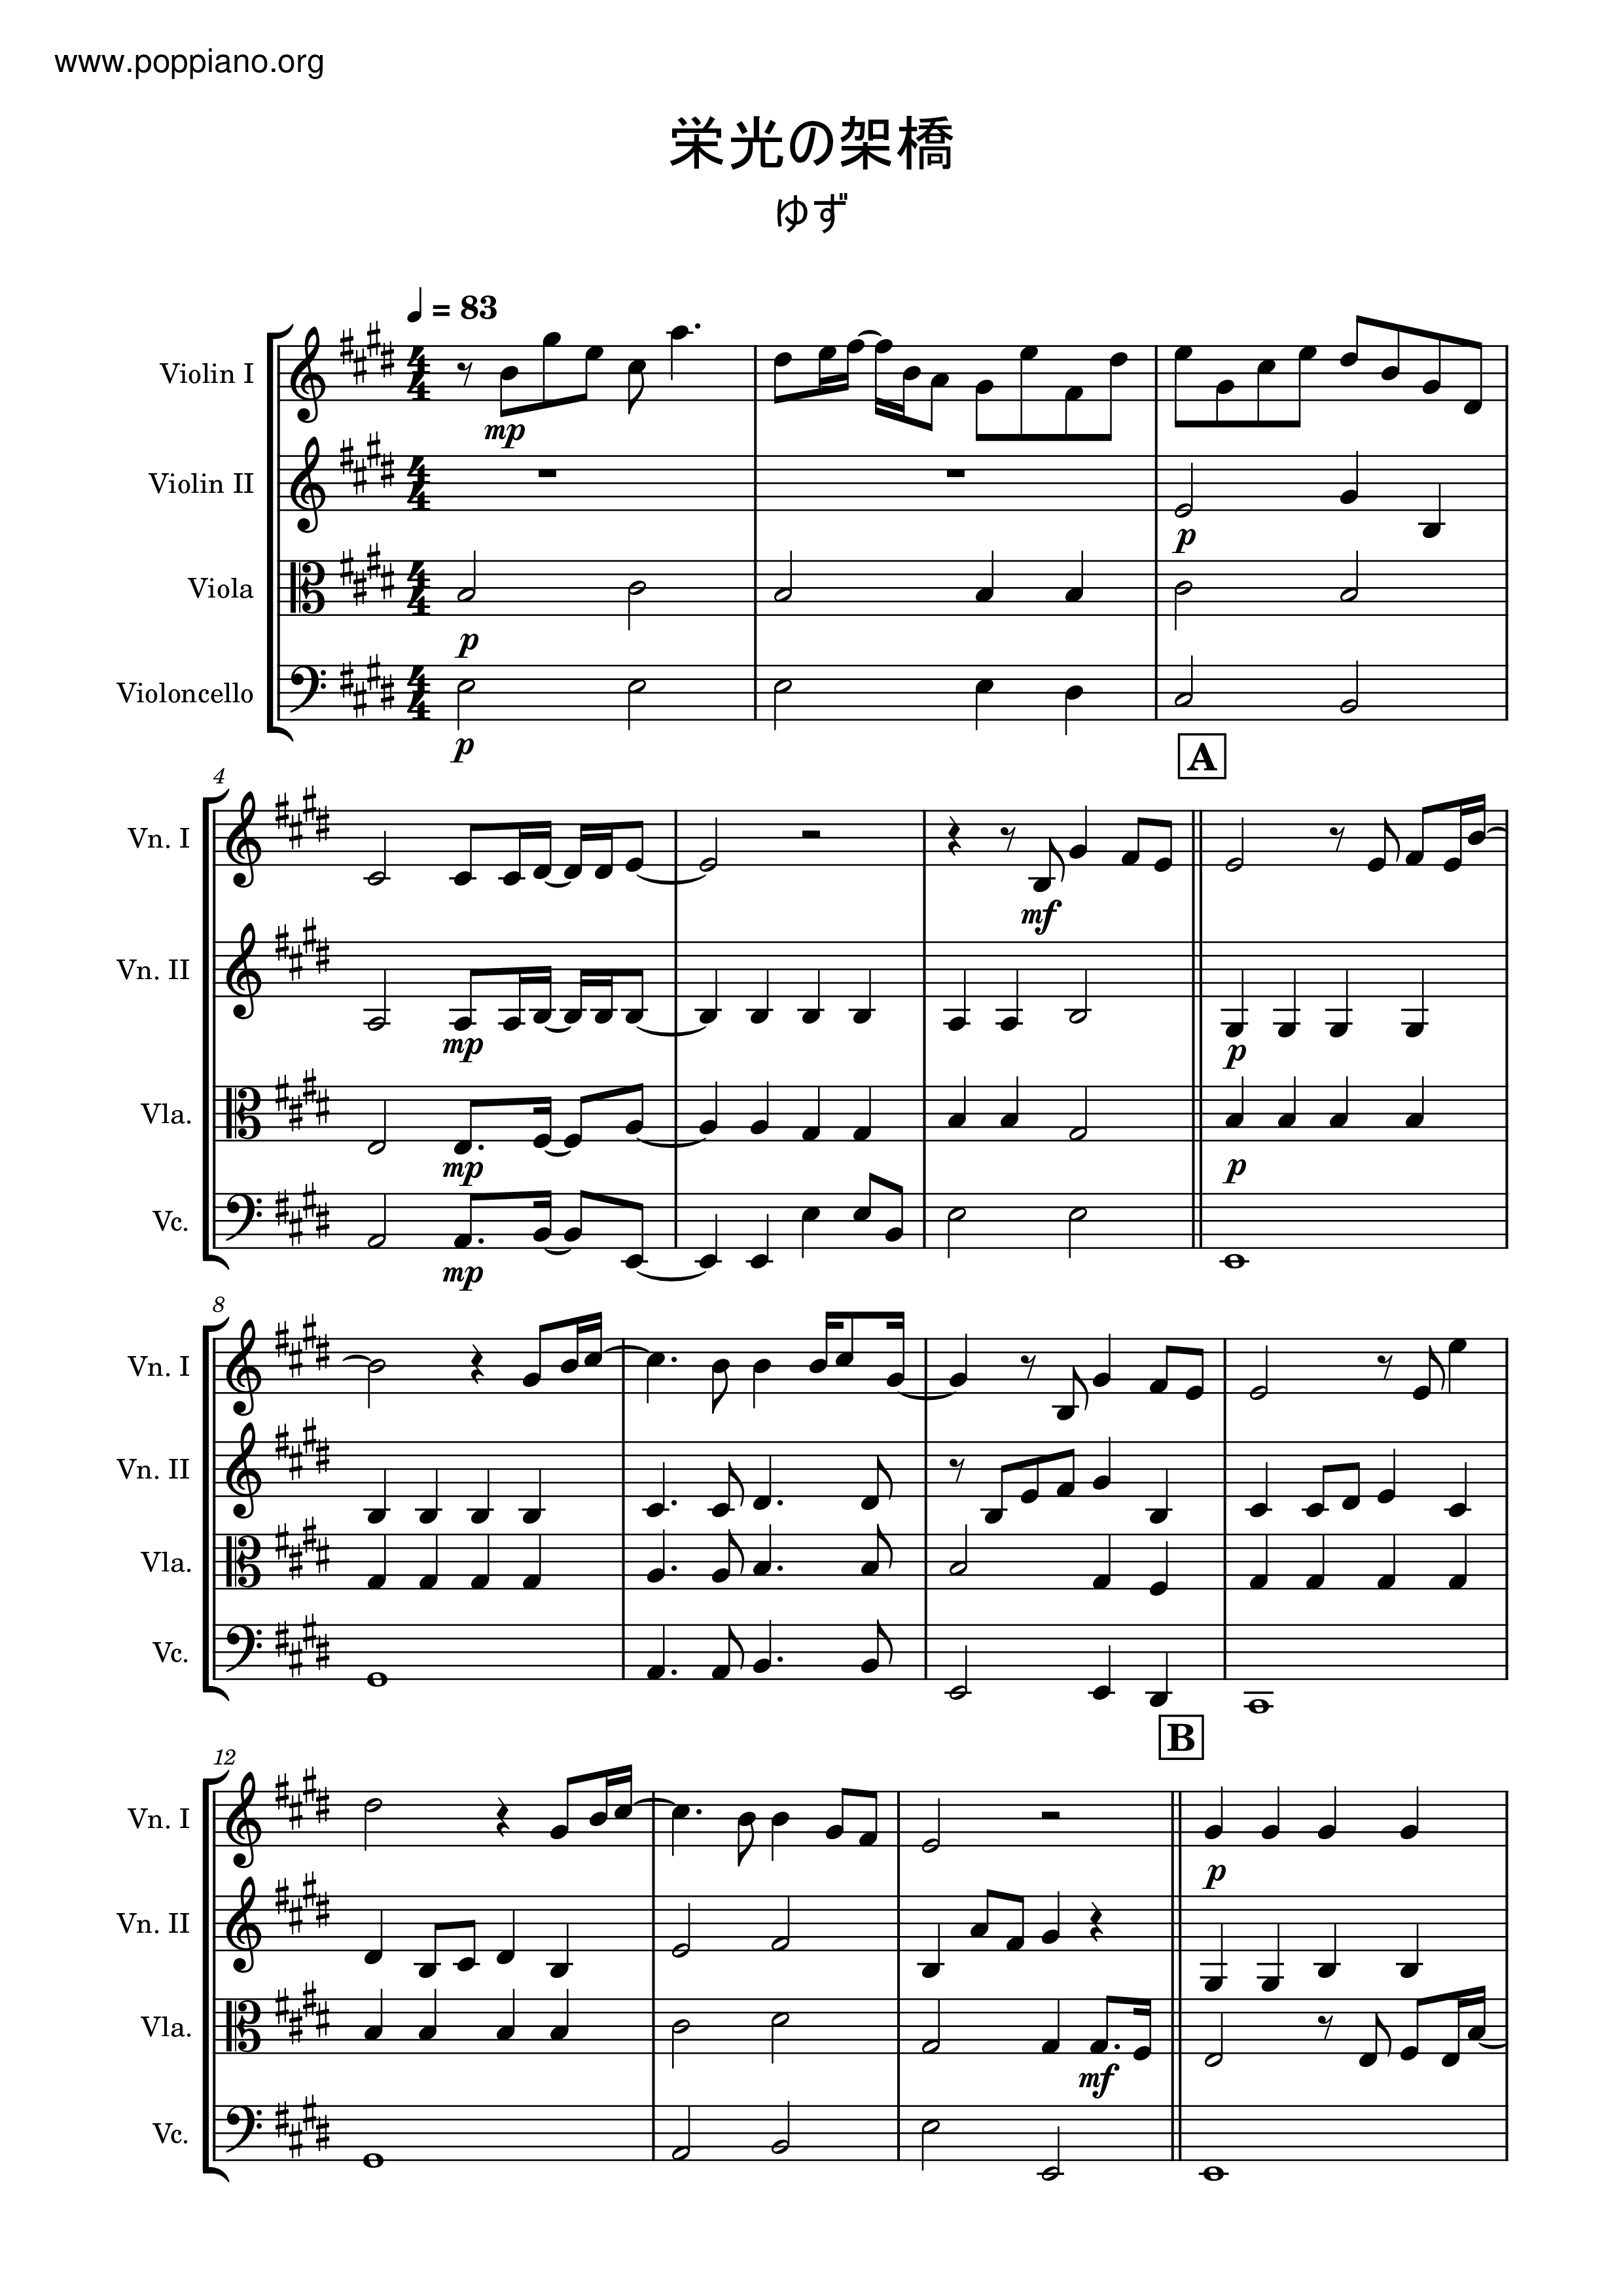 ☆栄光の架橋 - ゆず メロディpdf- 香港ポップピアノ協会 無料PDF楽譜 